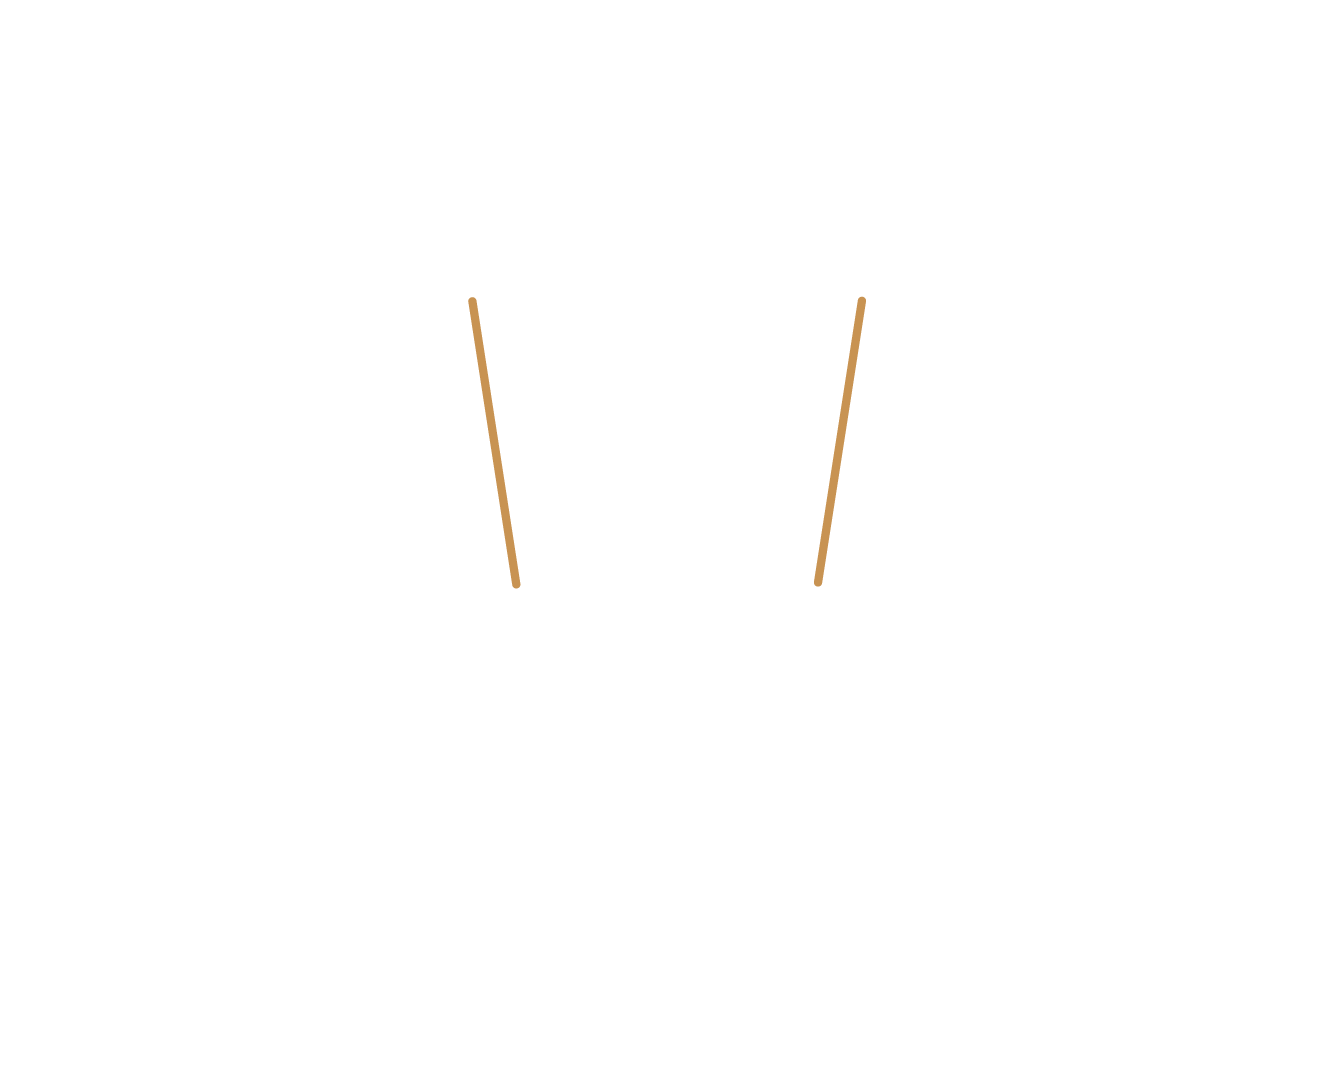 Avocats Wibault